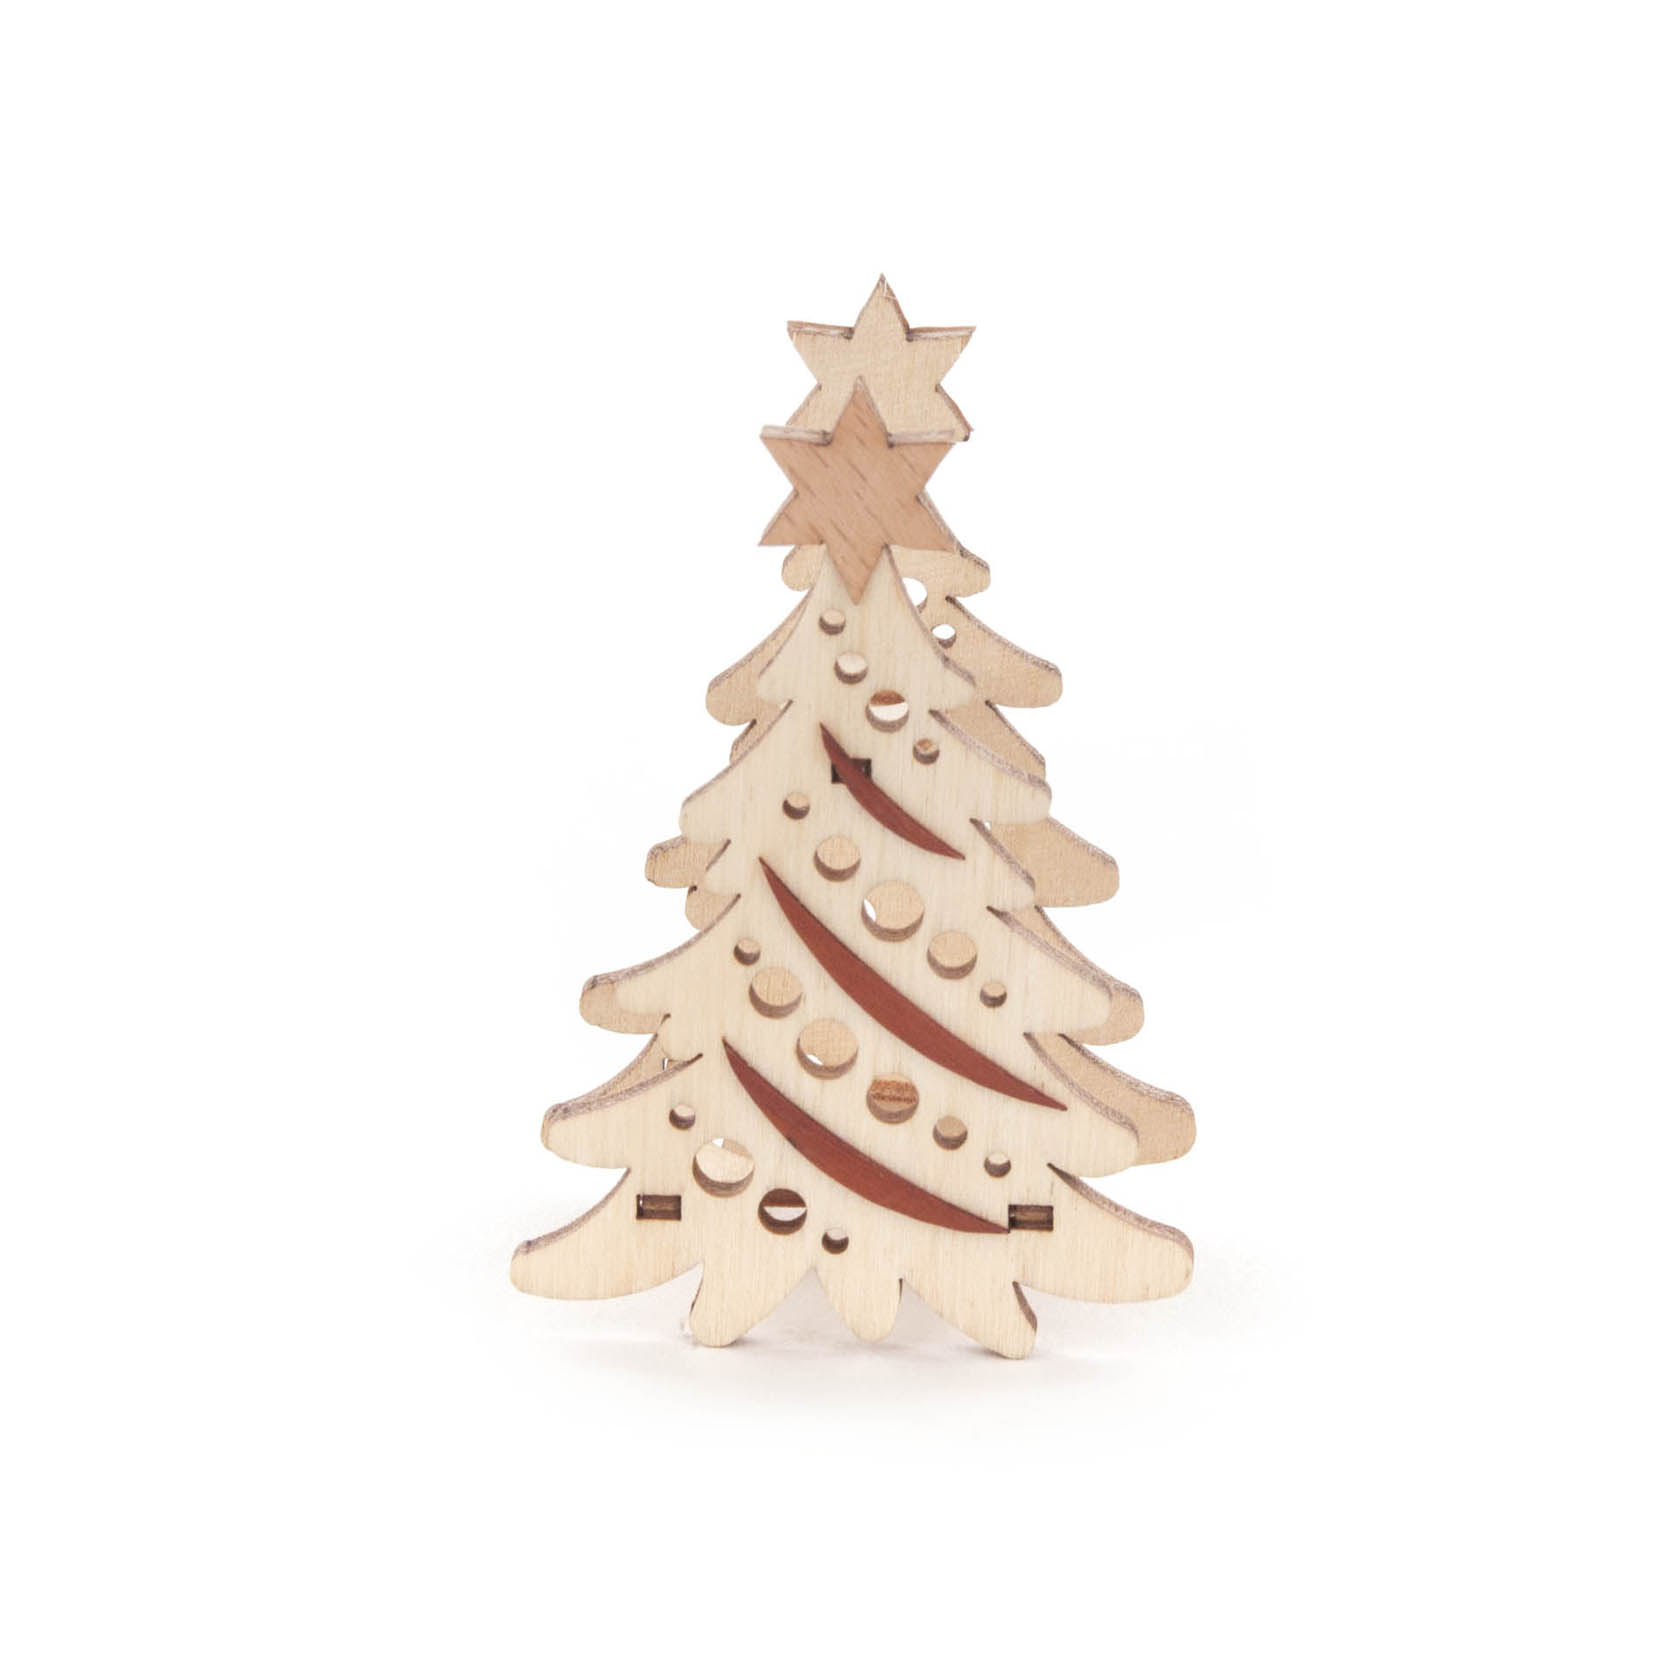 Kerzenaufstecker Weihnachtsbaum im Dregeno Online Shop günstig kaufen